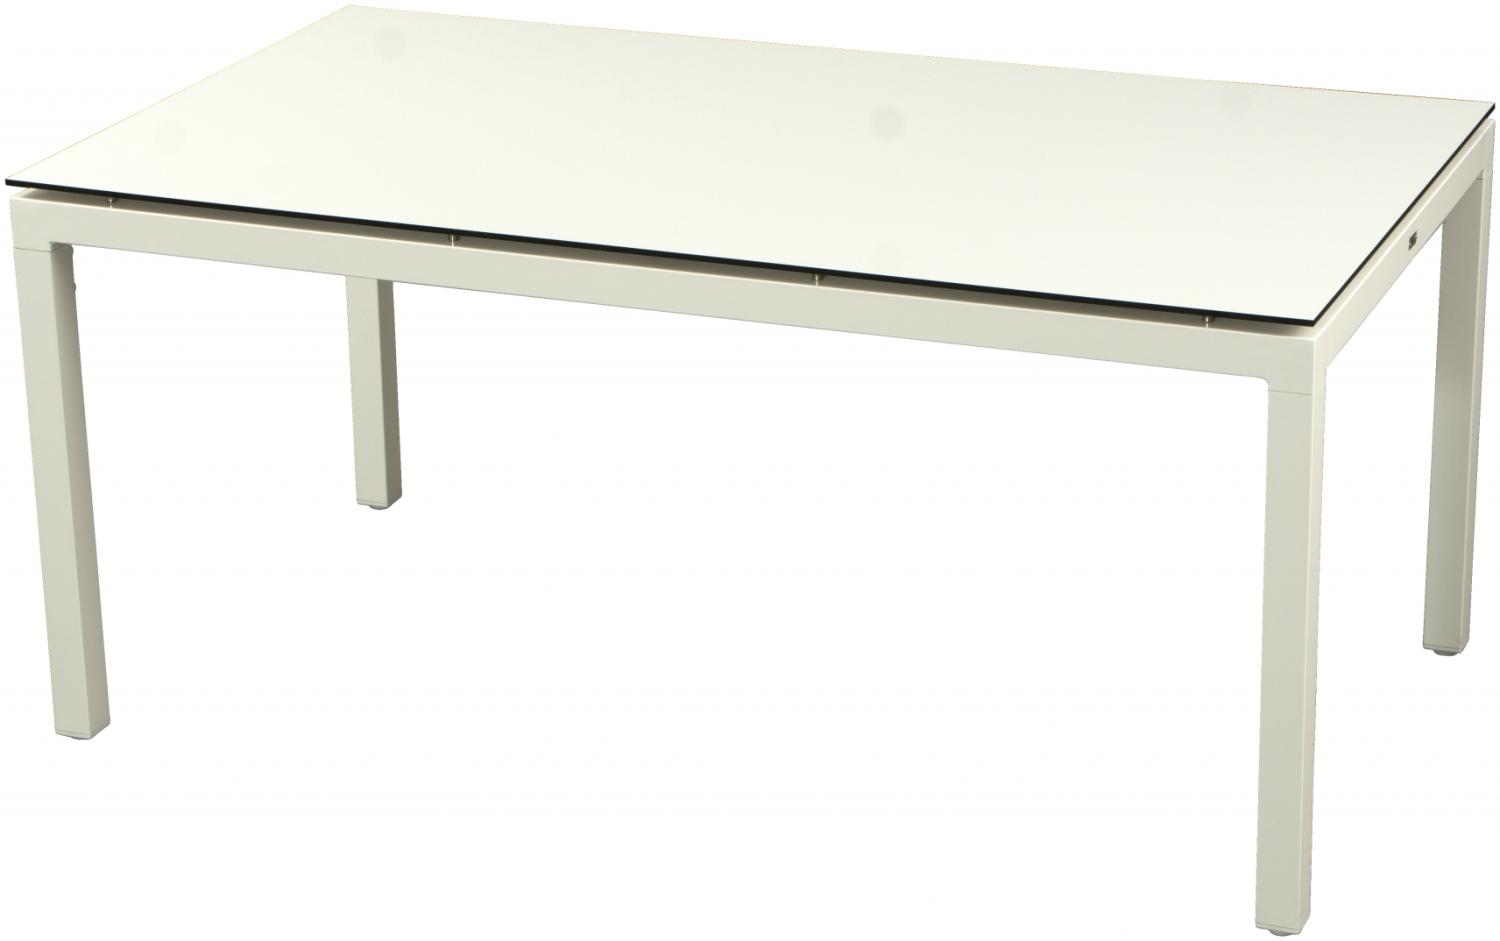 Inko Gartentisch Aluminium weiß 160x90 cm Terrassentisch Tischplatte nach Wahl Teakholz recycelt Bild 1